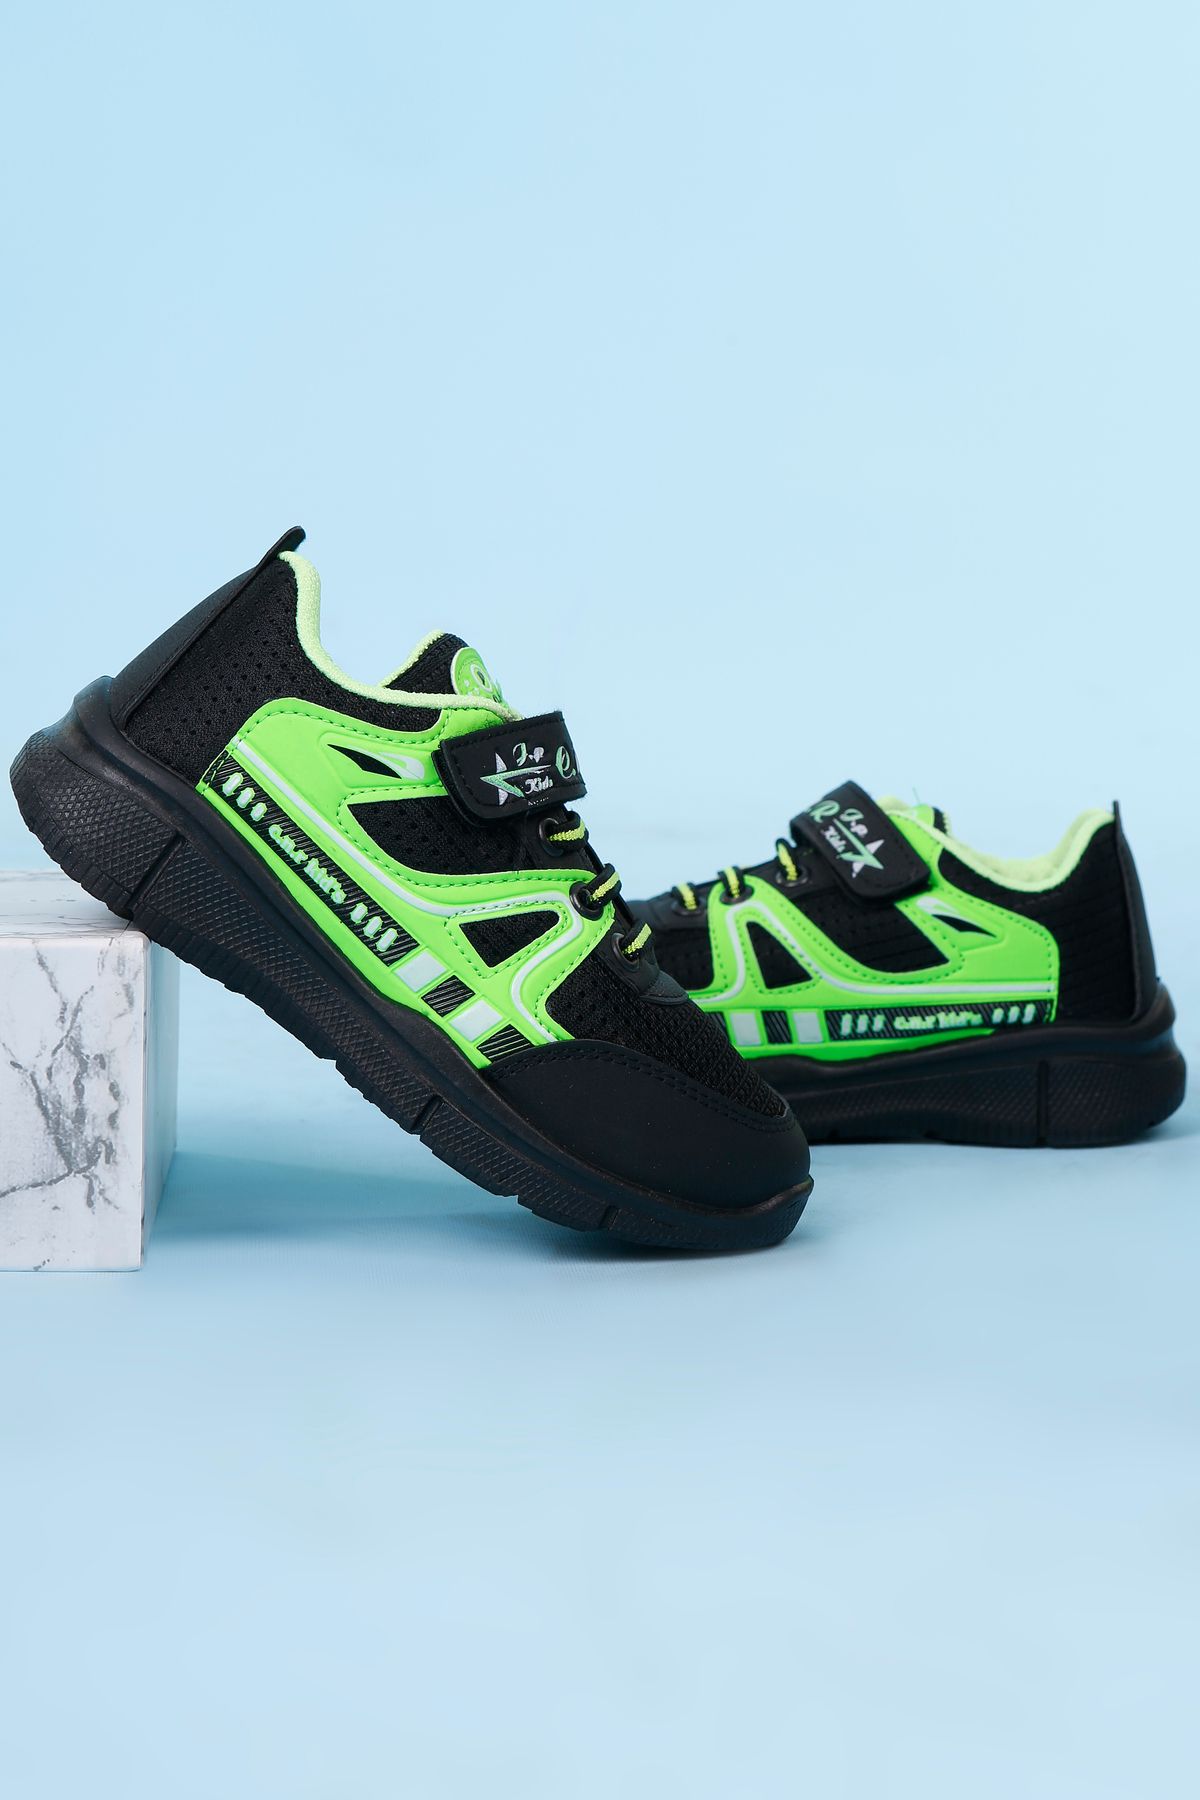 lord's ayakkabı Unisex Siyah-Yeşil Çocuk Spor Ayakkabı Sneakers Okul Ayakkabısı